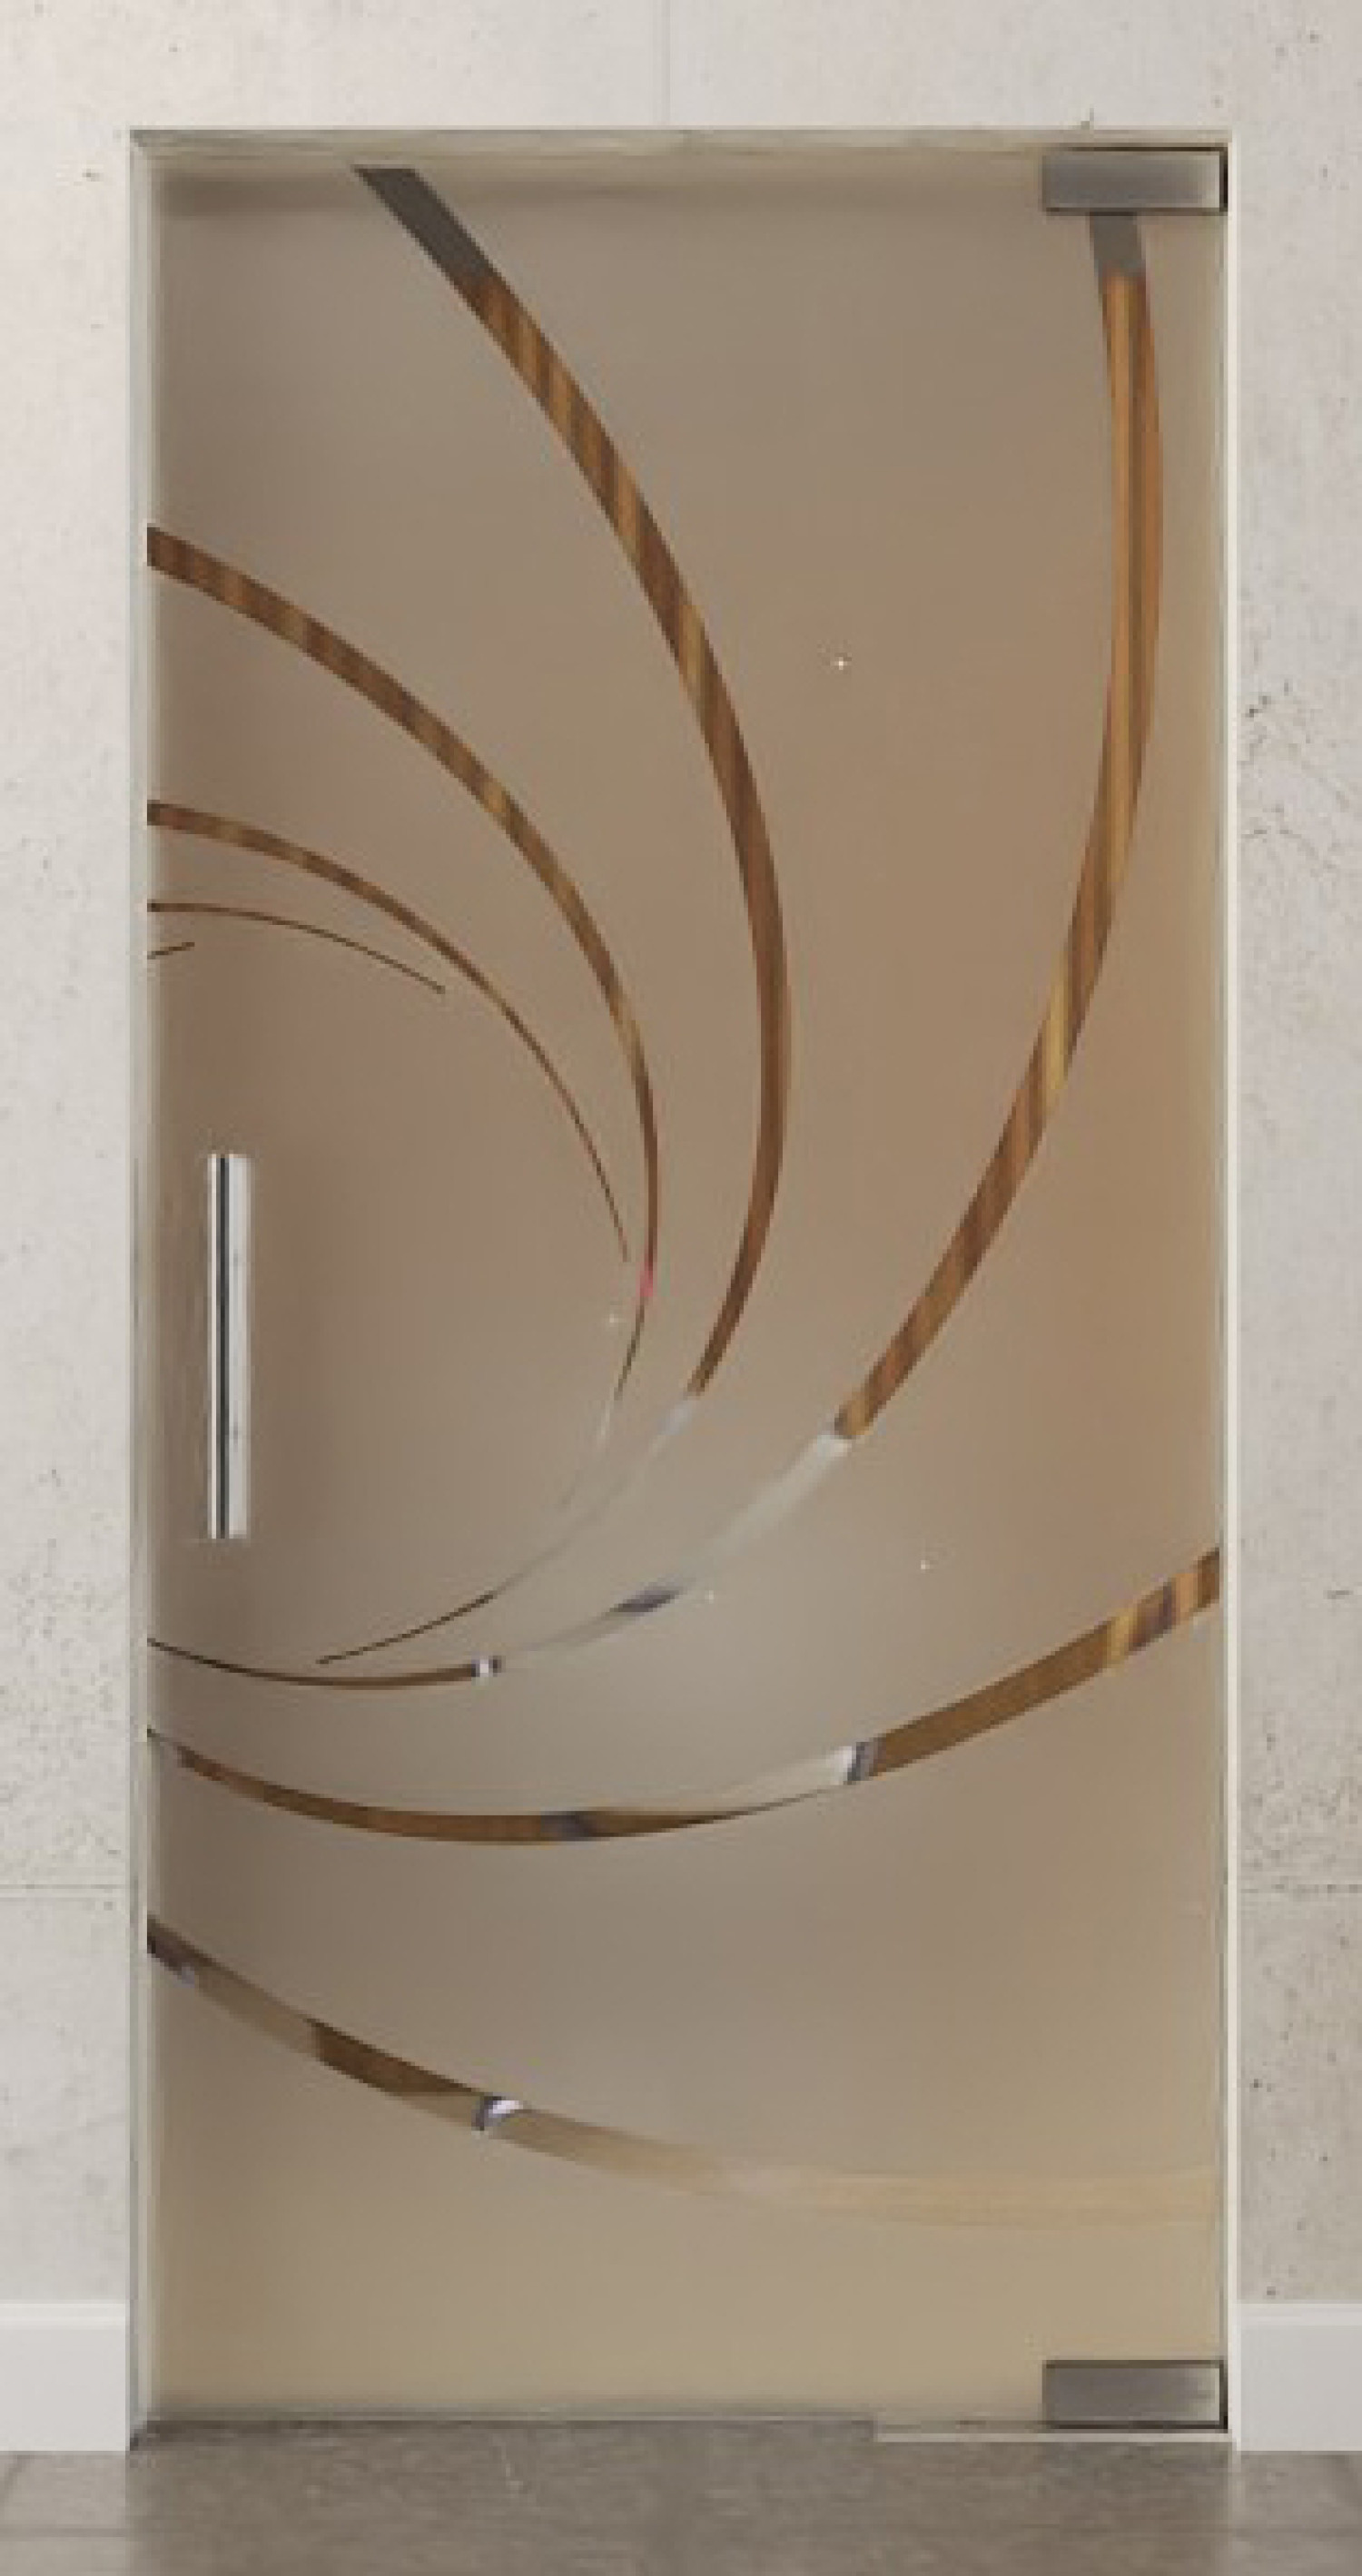 Bild von Cristall Motiv klar Glaspendeltür DORMA Mundus BTS Variante 1 - Erkelenz